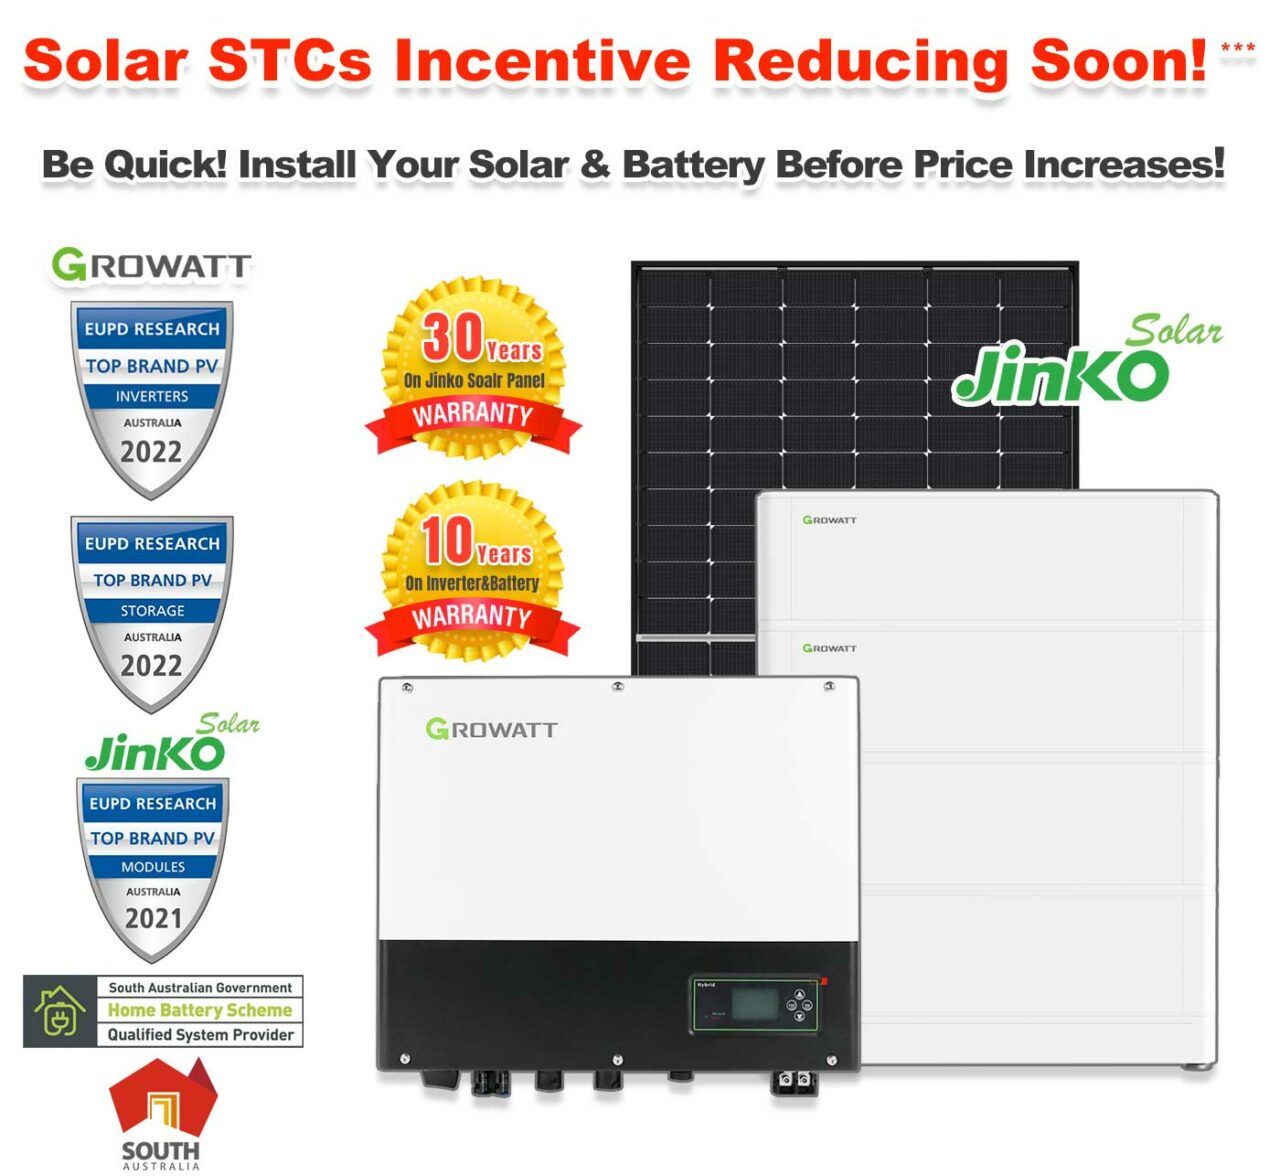 sa-s-1-adelaide-solar-panel-home-battery-rebate-sunterra-solar